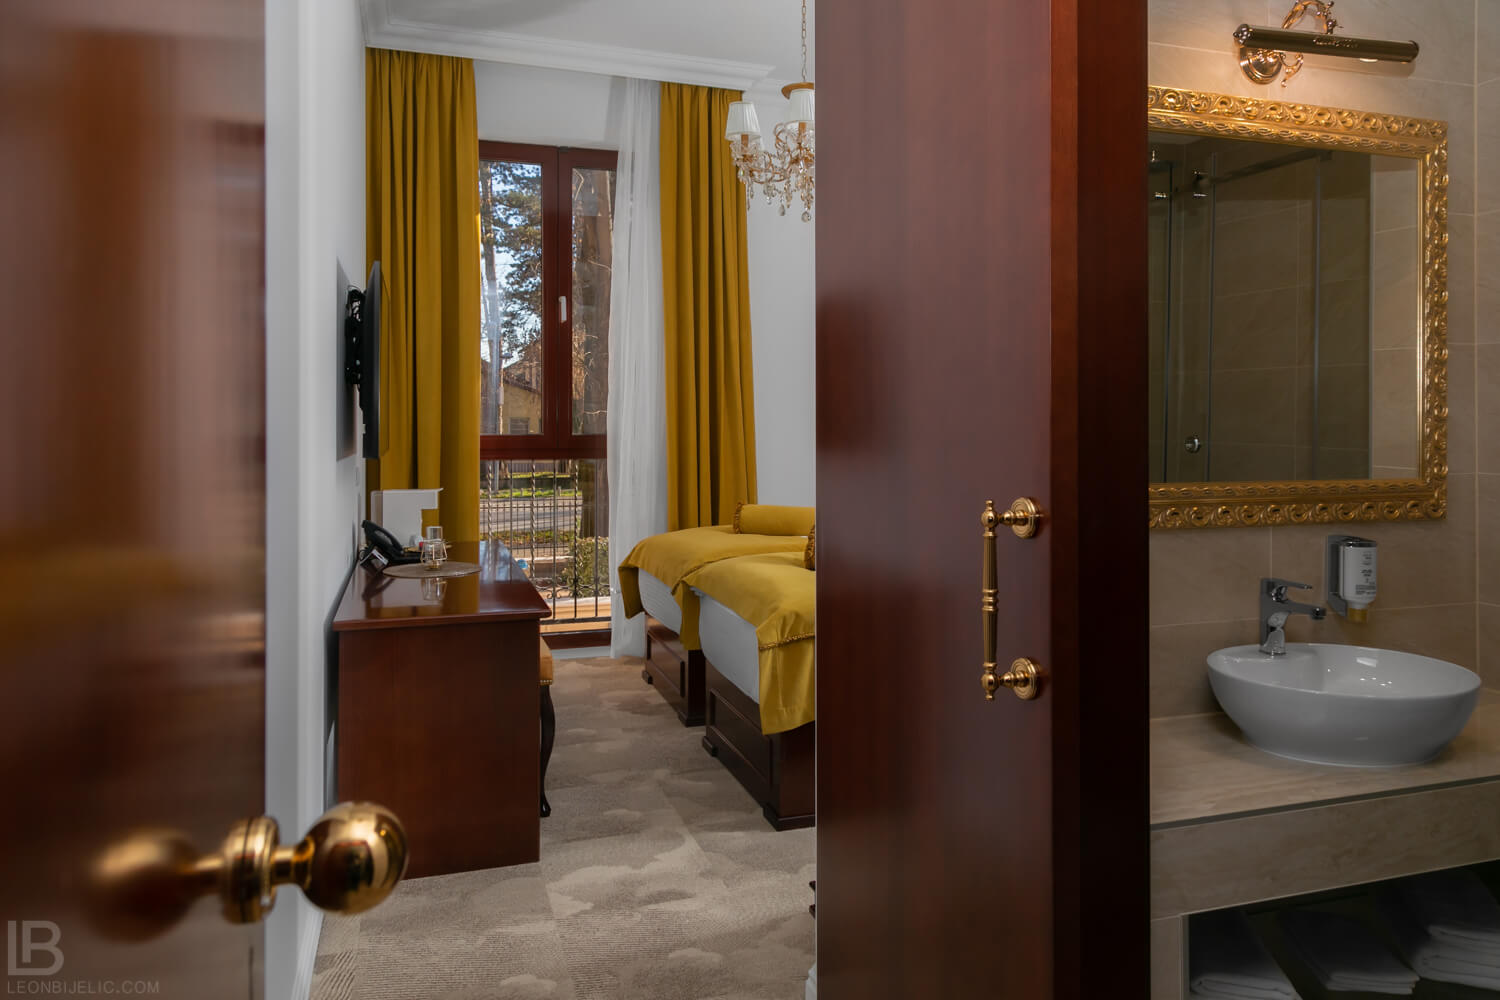 Luxury and the best accomodation in Banja Luka - Hotel Integra - Photographer Leon Bijelić - Fotograf - slike